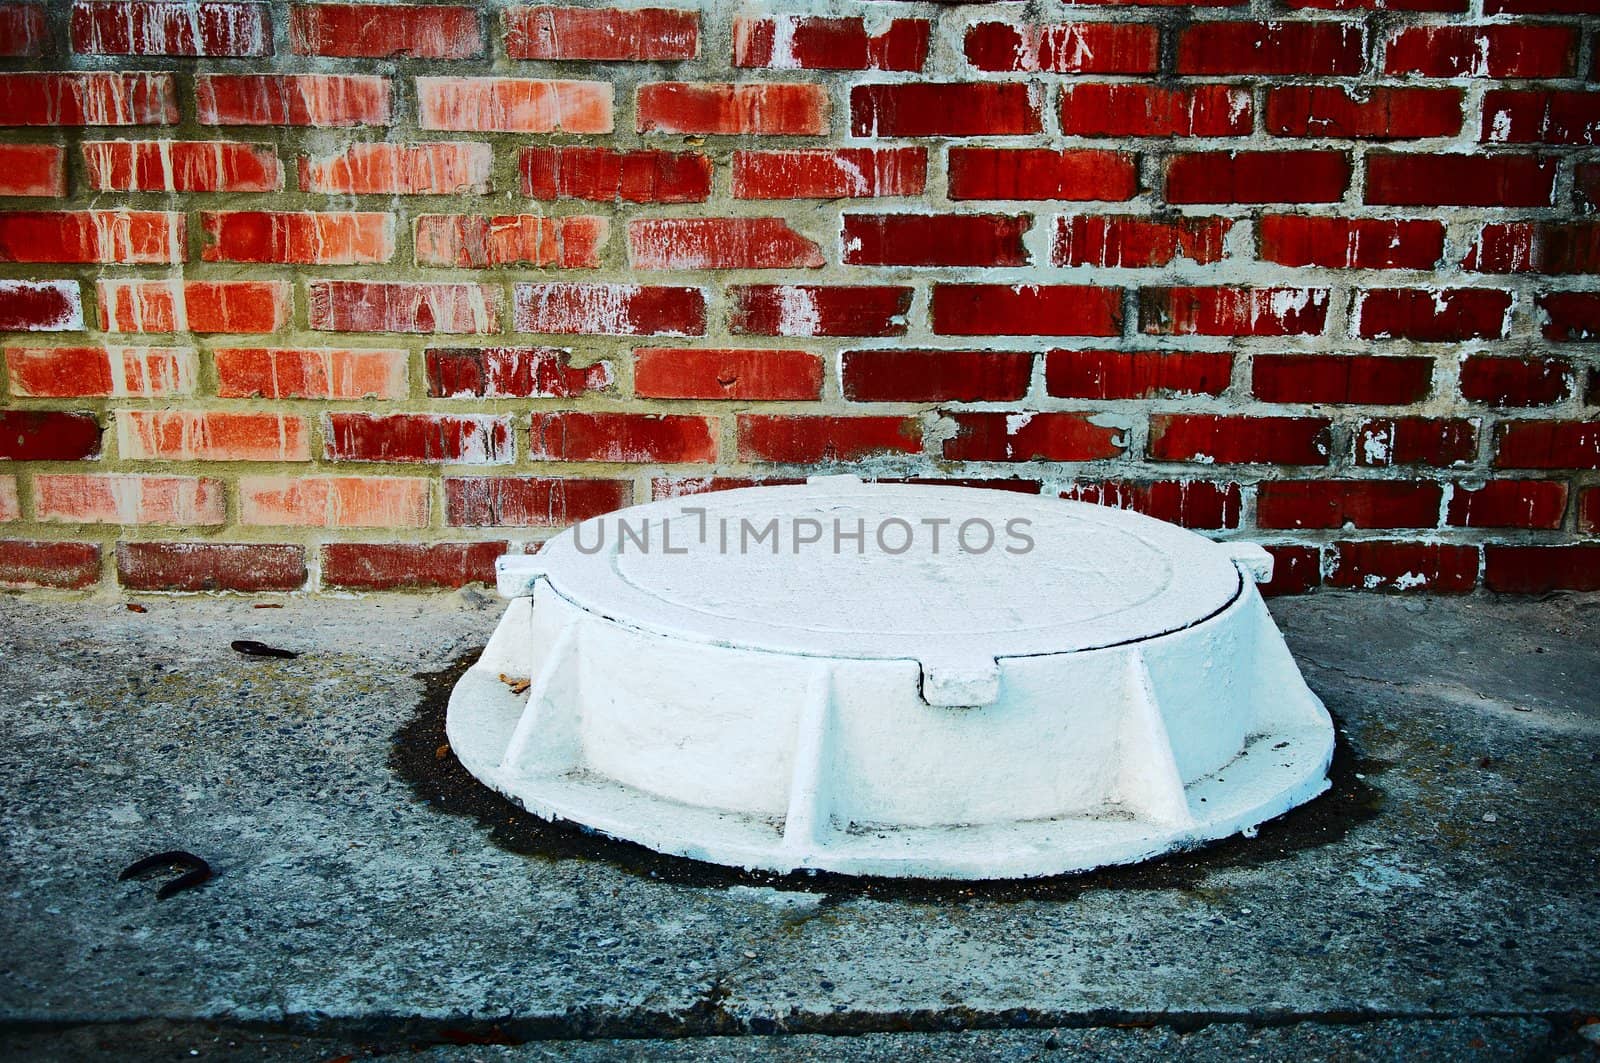 The white manhole. Horizontally by LeksusTuss